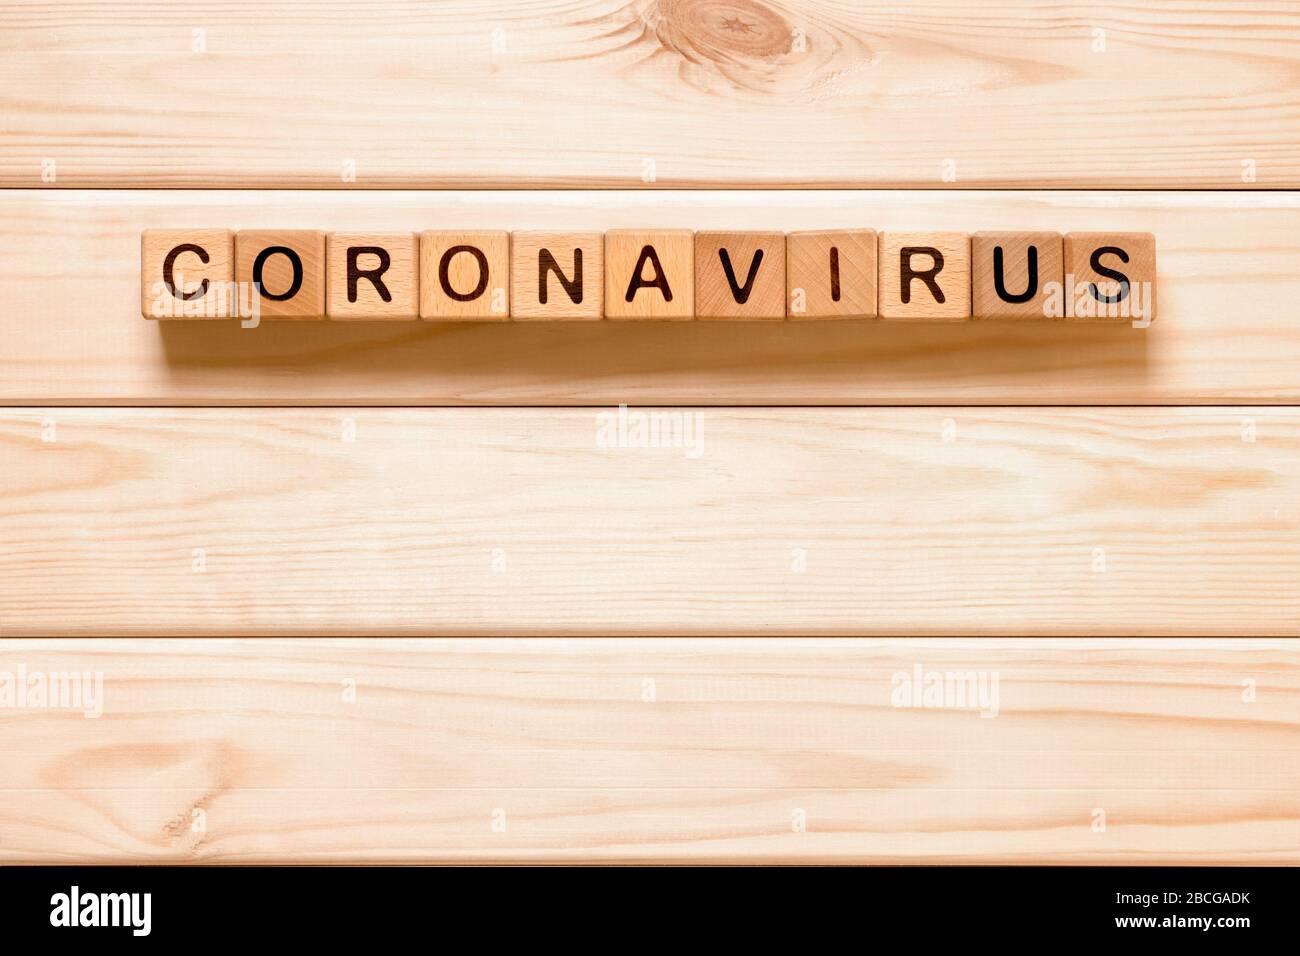 Mot Coronavirus avec des blocs de bois, cubes sur fond de bois. COVID-19. Concept d'auto-isolation. Quarantaine du coronavirus. Travailler à domicile. Restez à la maison Banque D'Images